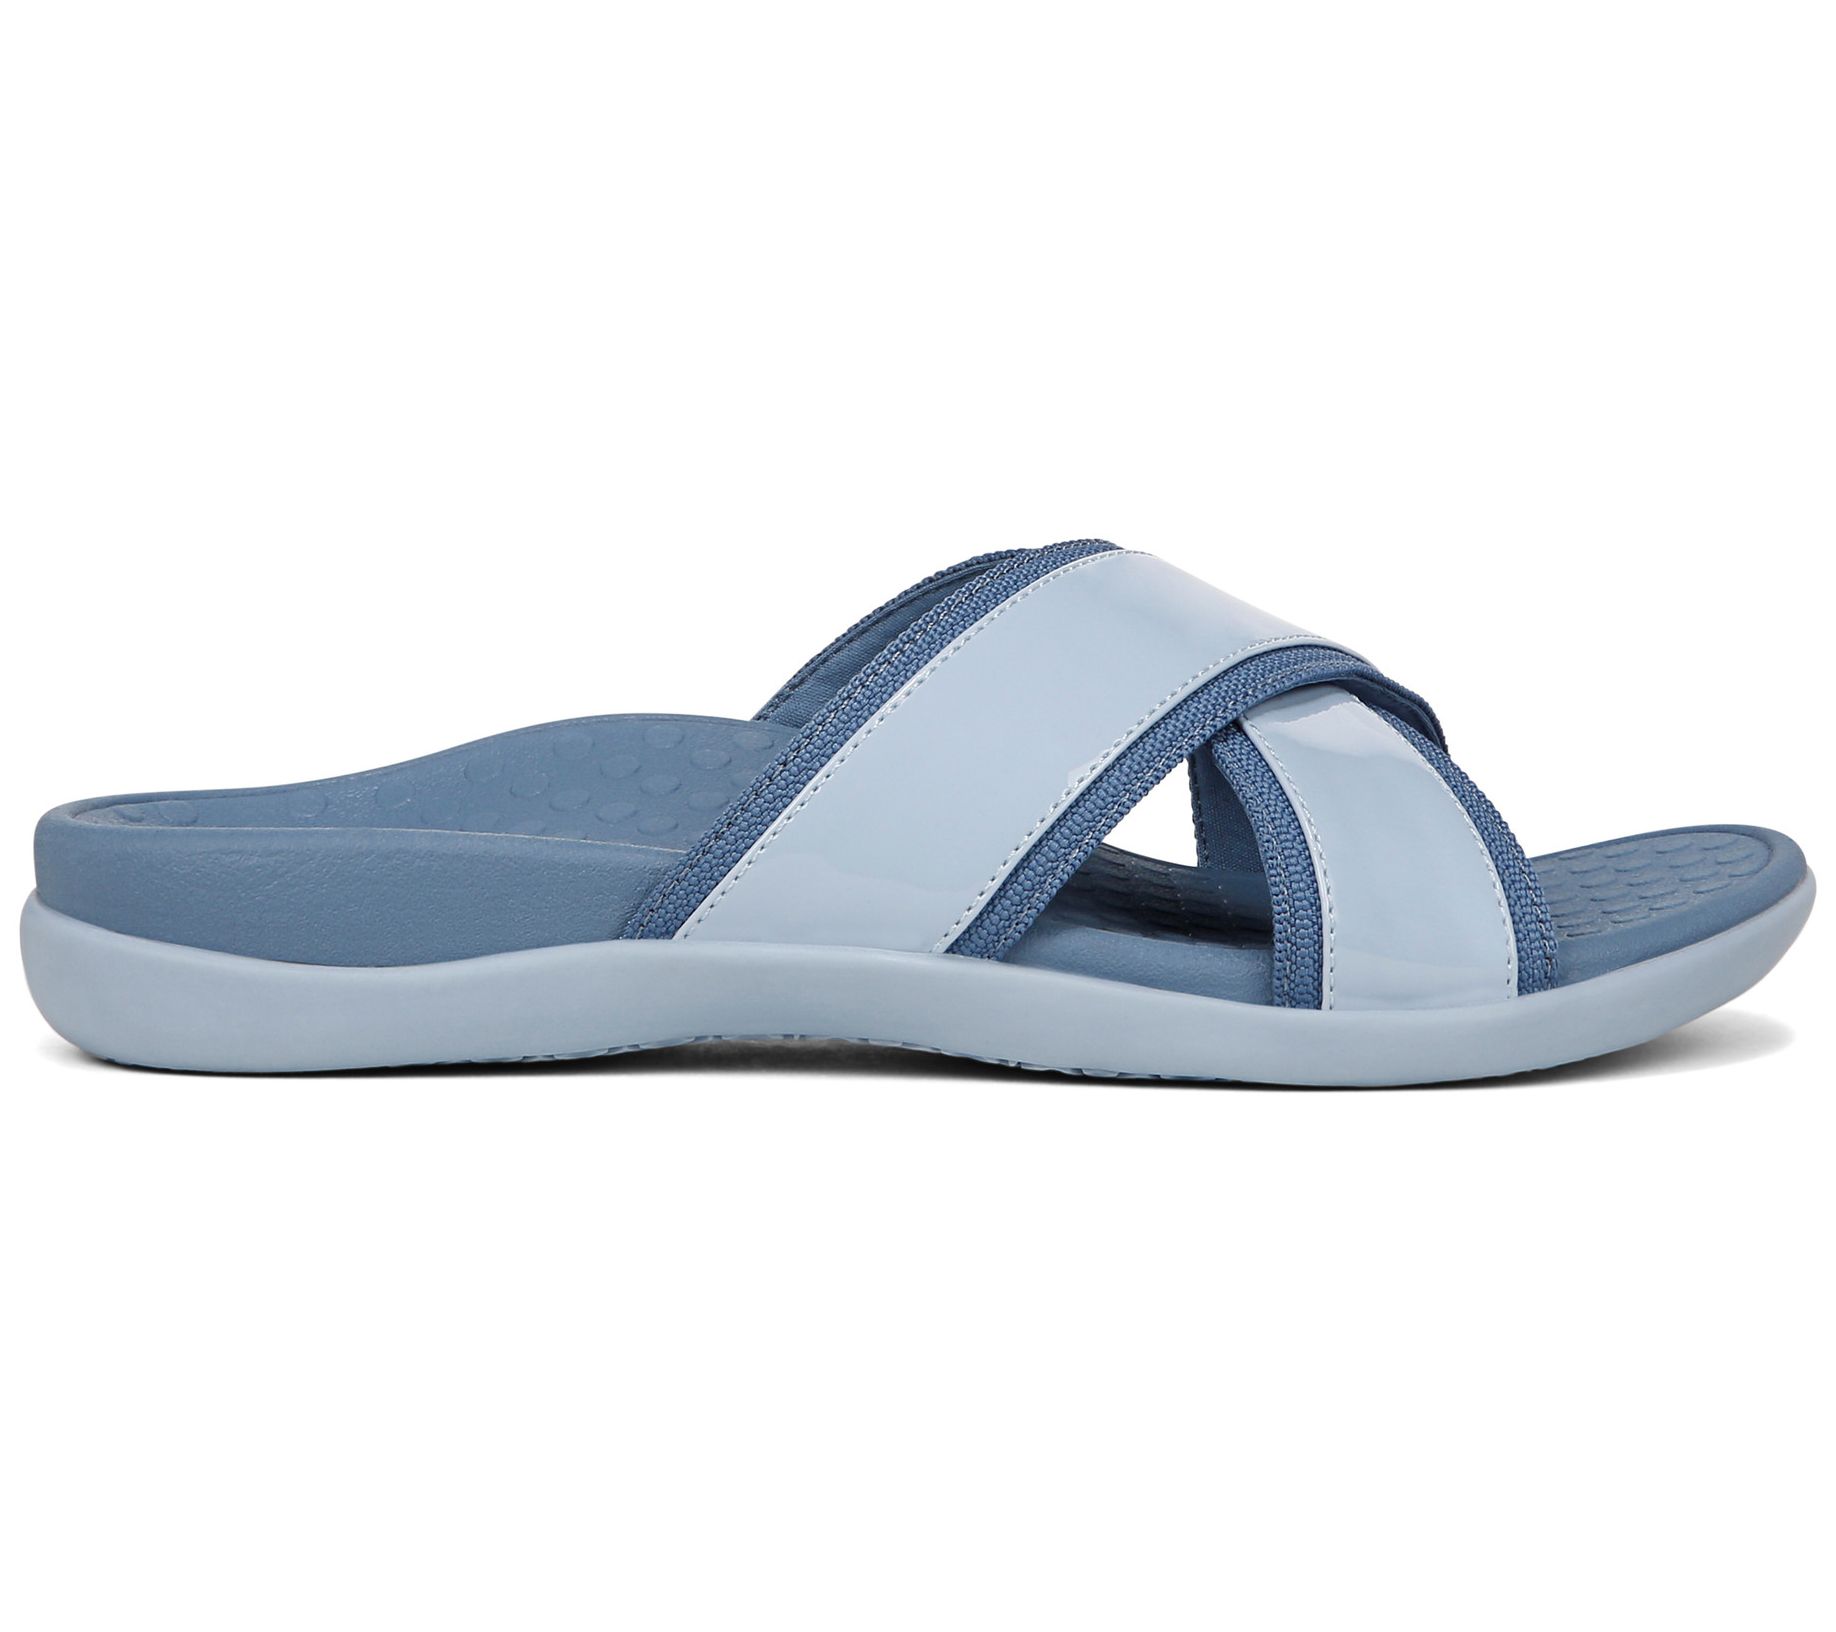 Vionic Patent Cross-Band Slide Sandals Merced